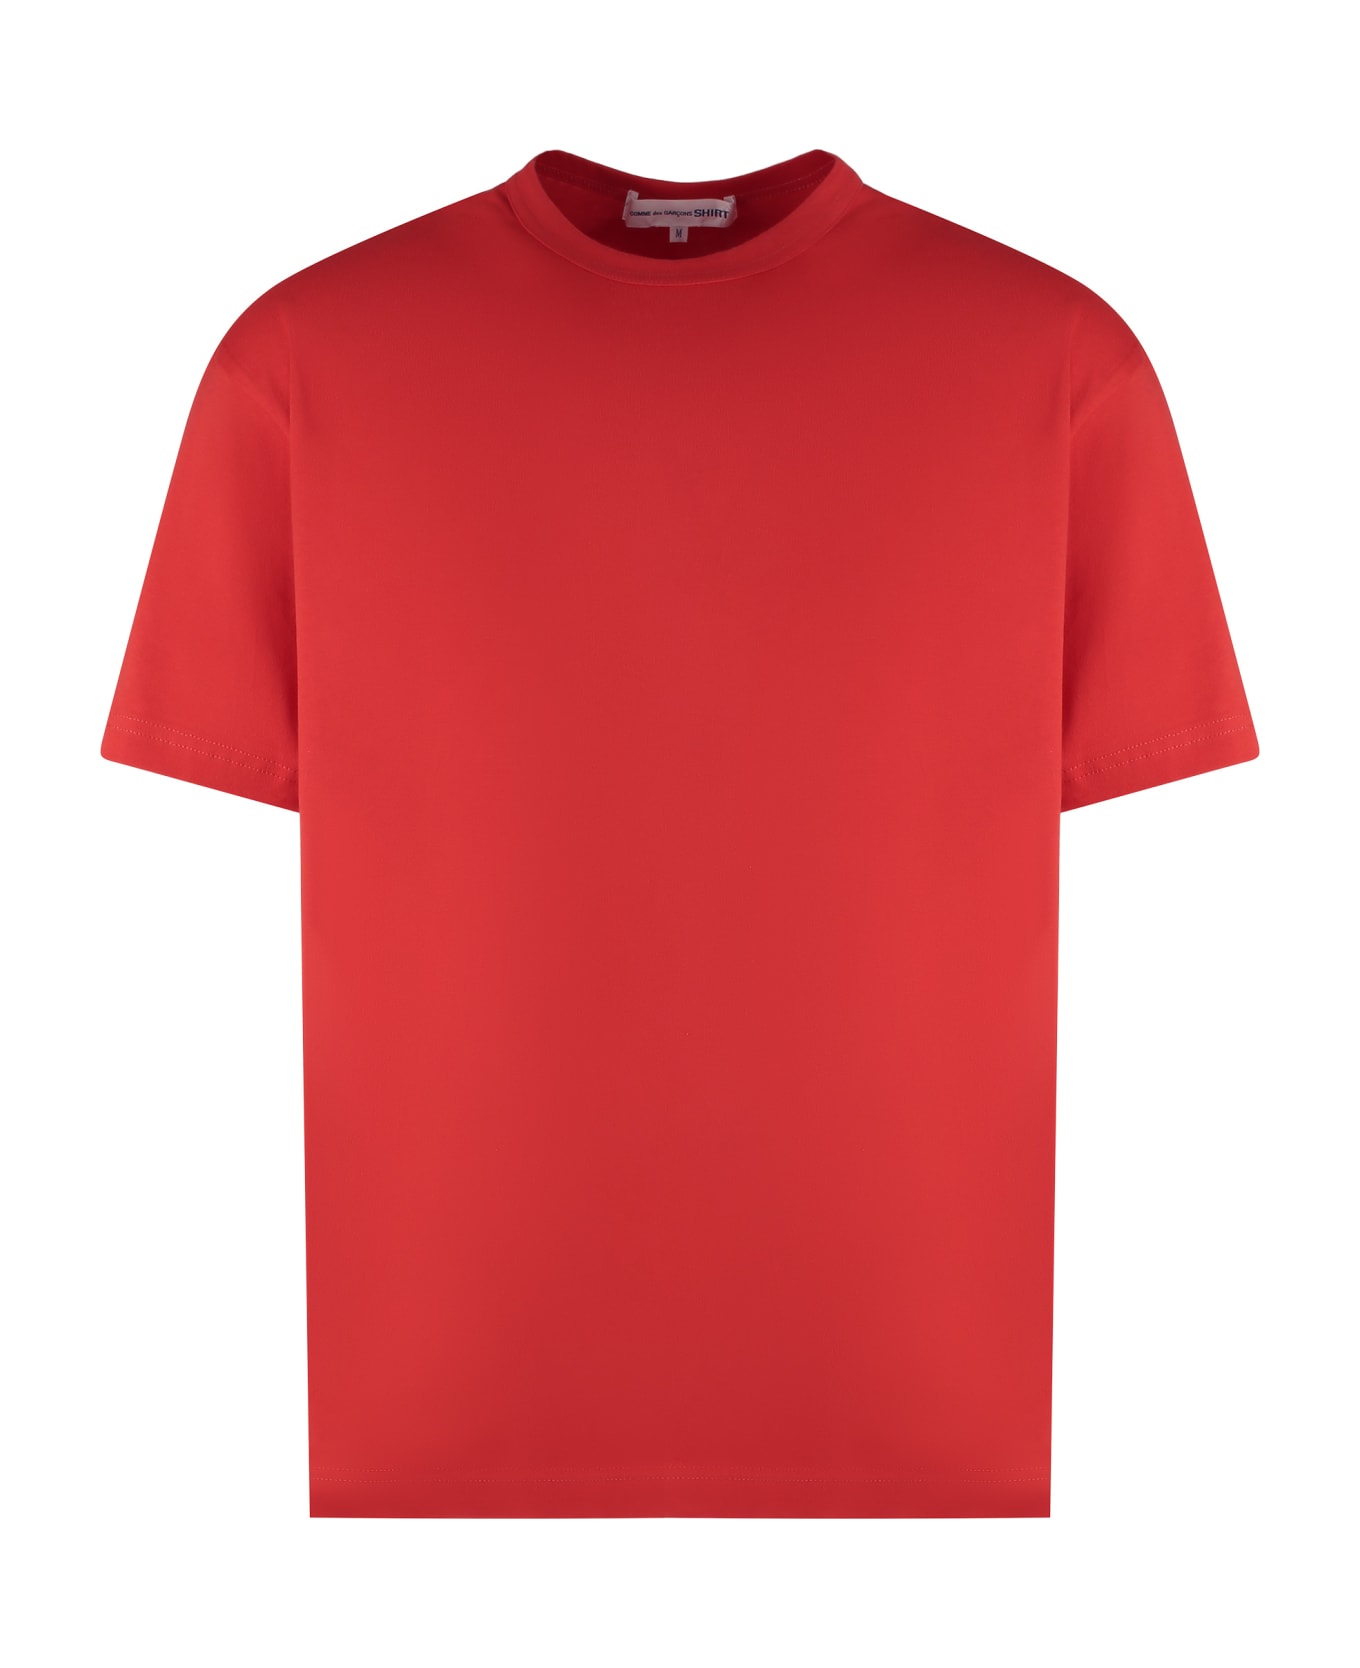 Comme des Garçons Shirt Cotton T-shirt - Red